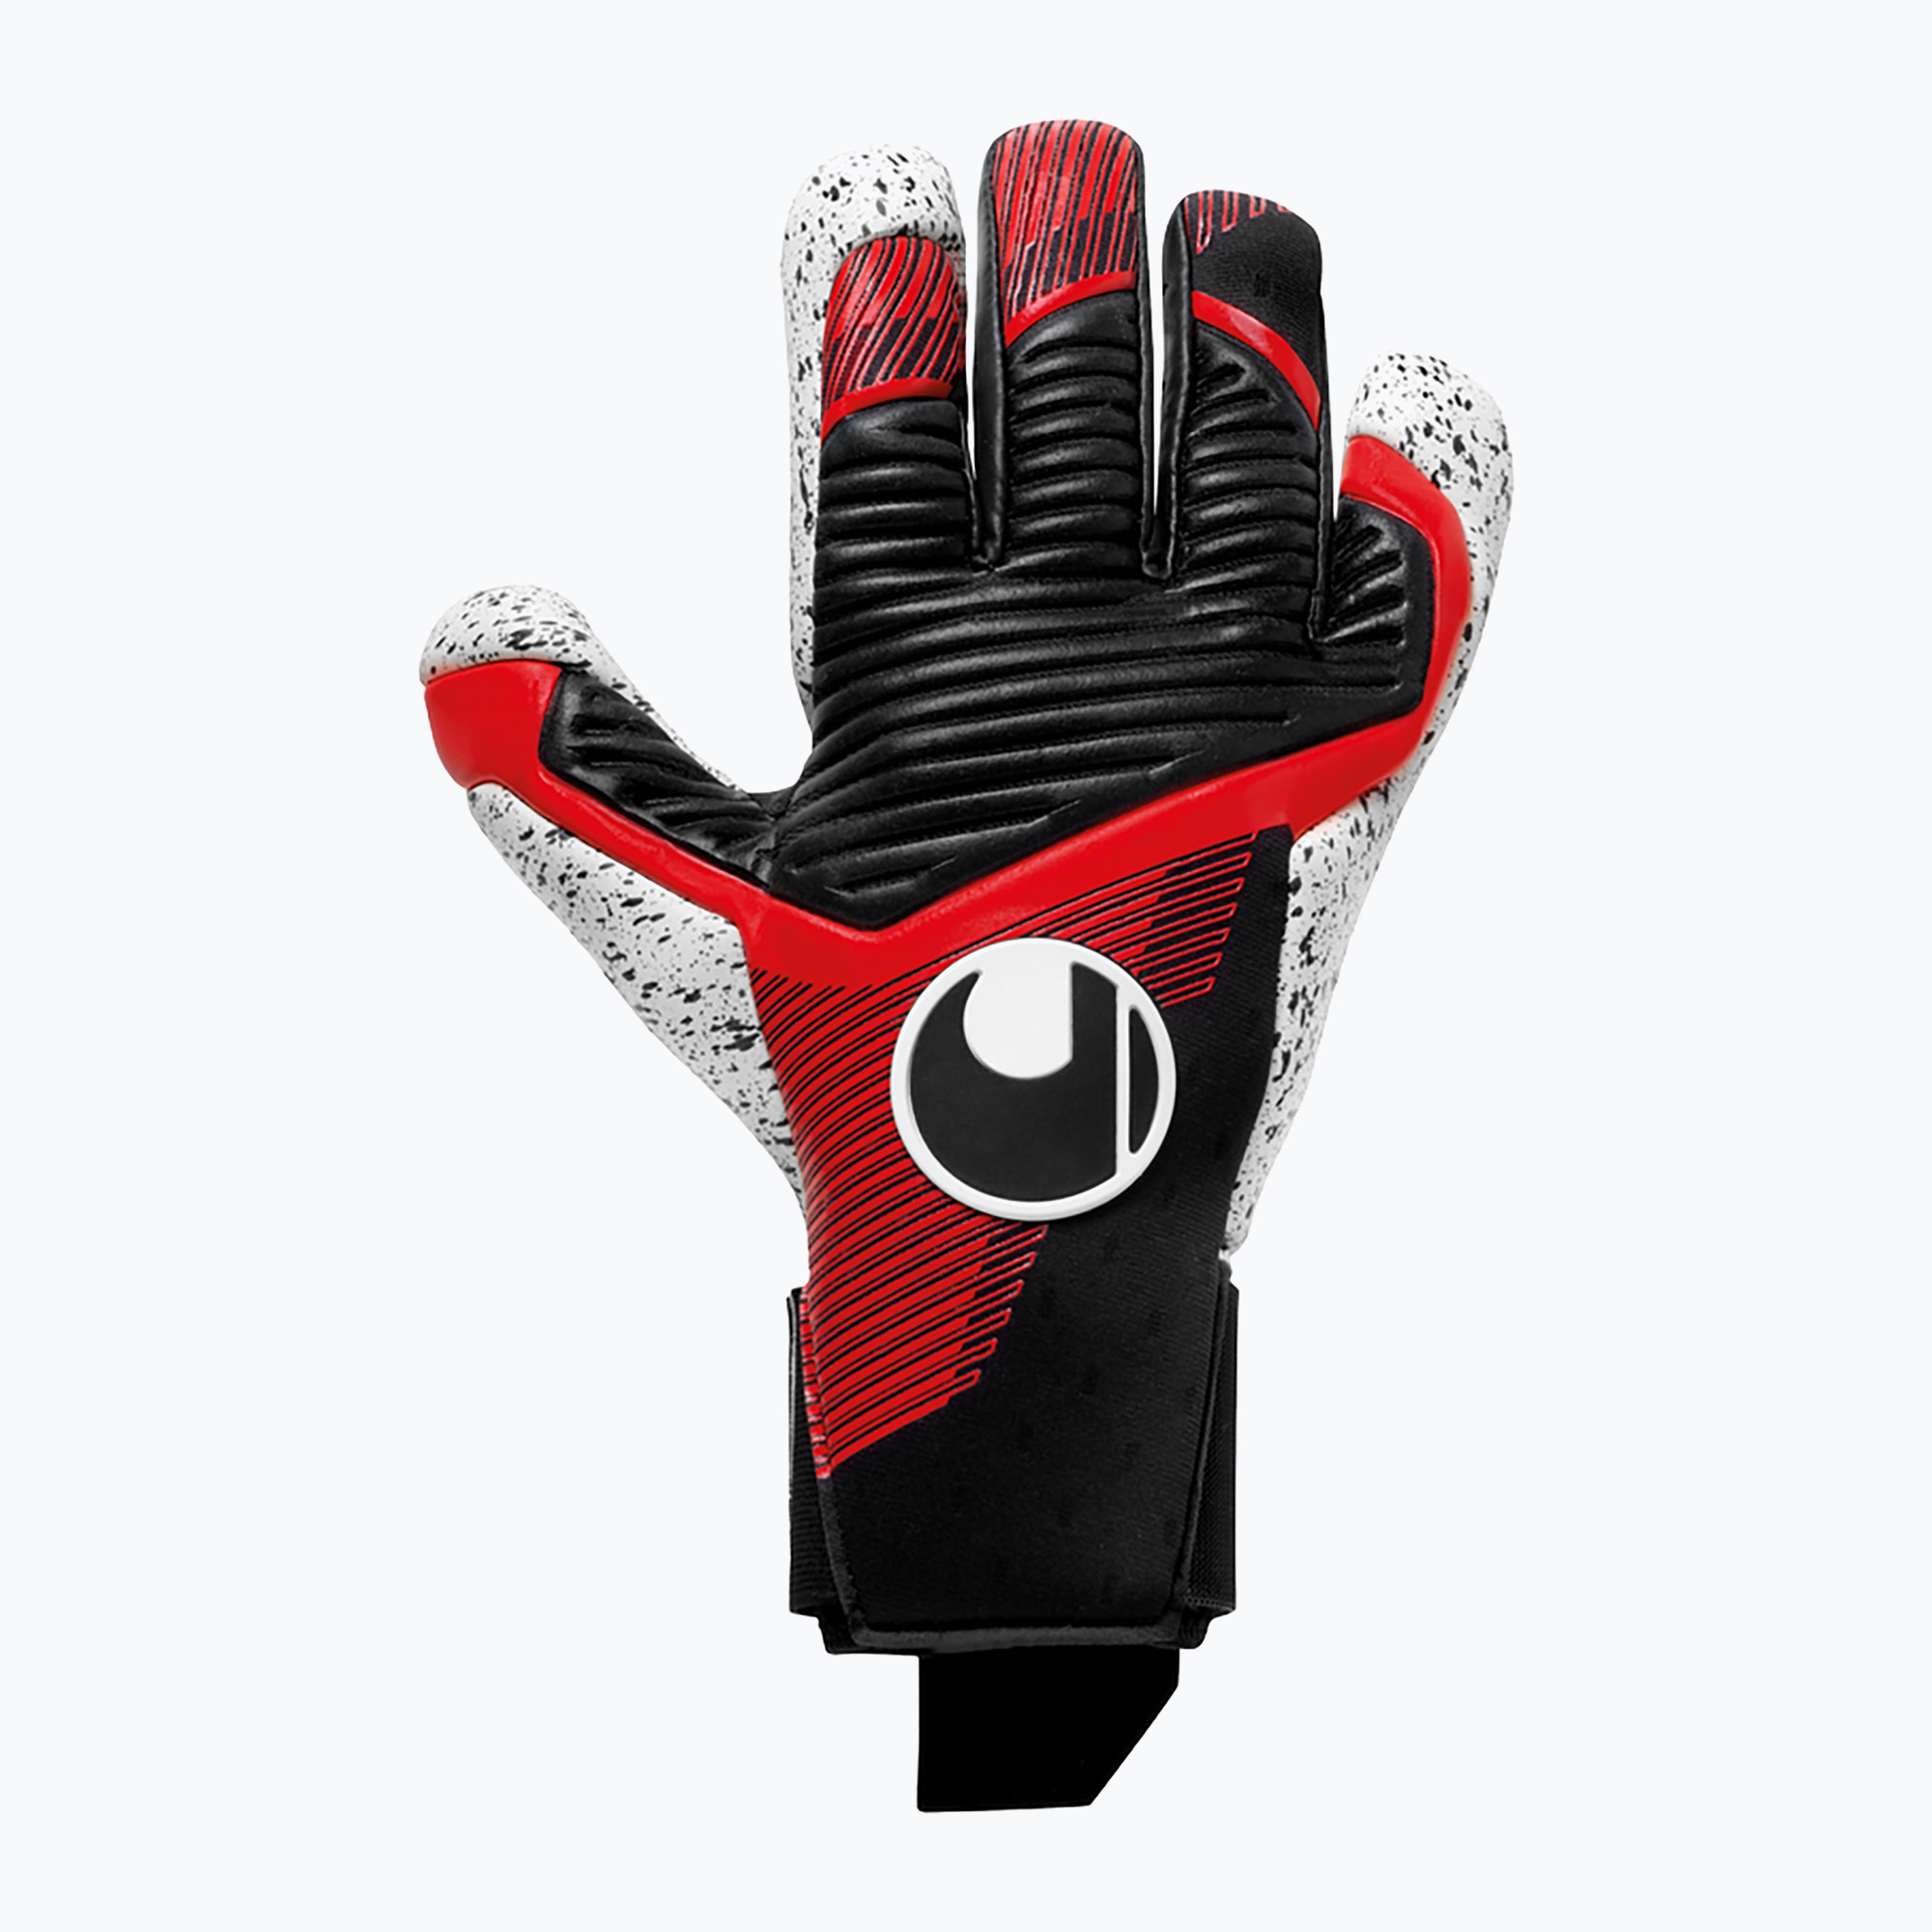 Uhlsport Powerline Supergrip  Hn вратарски ръкавици черни/червени/бели